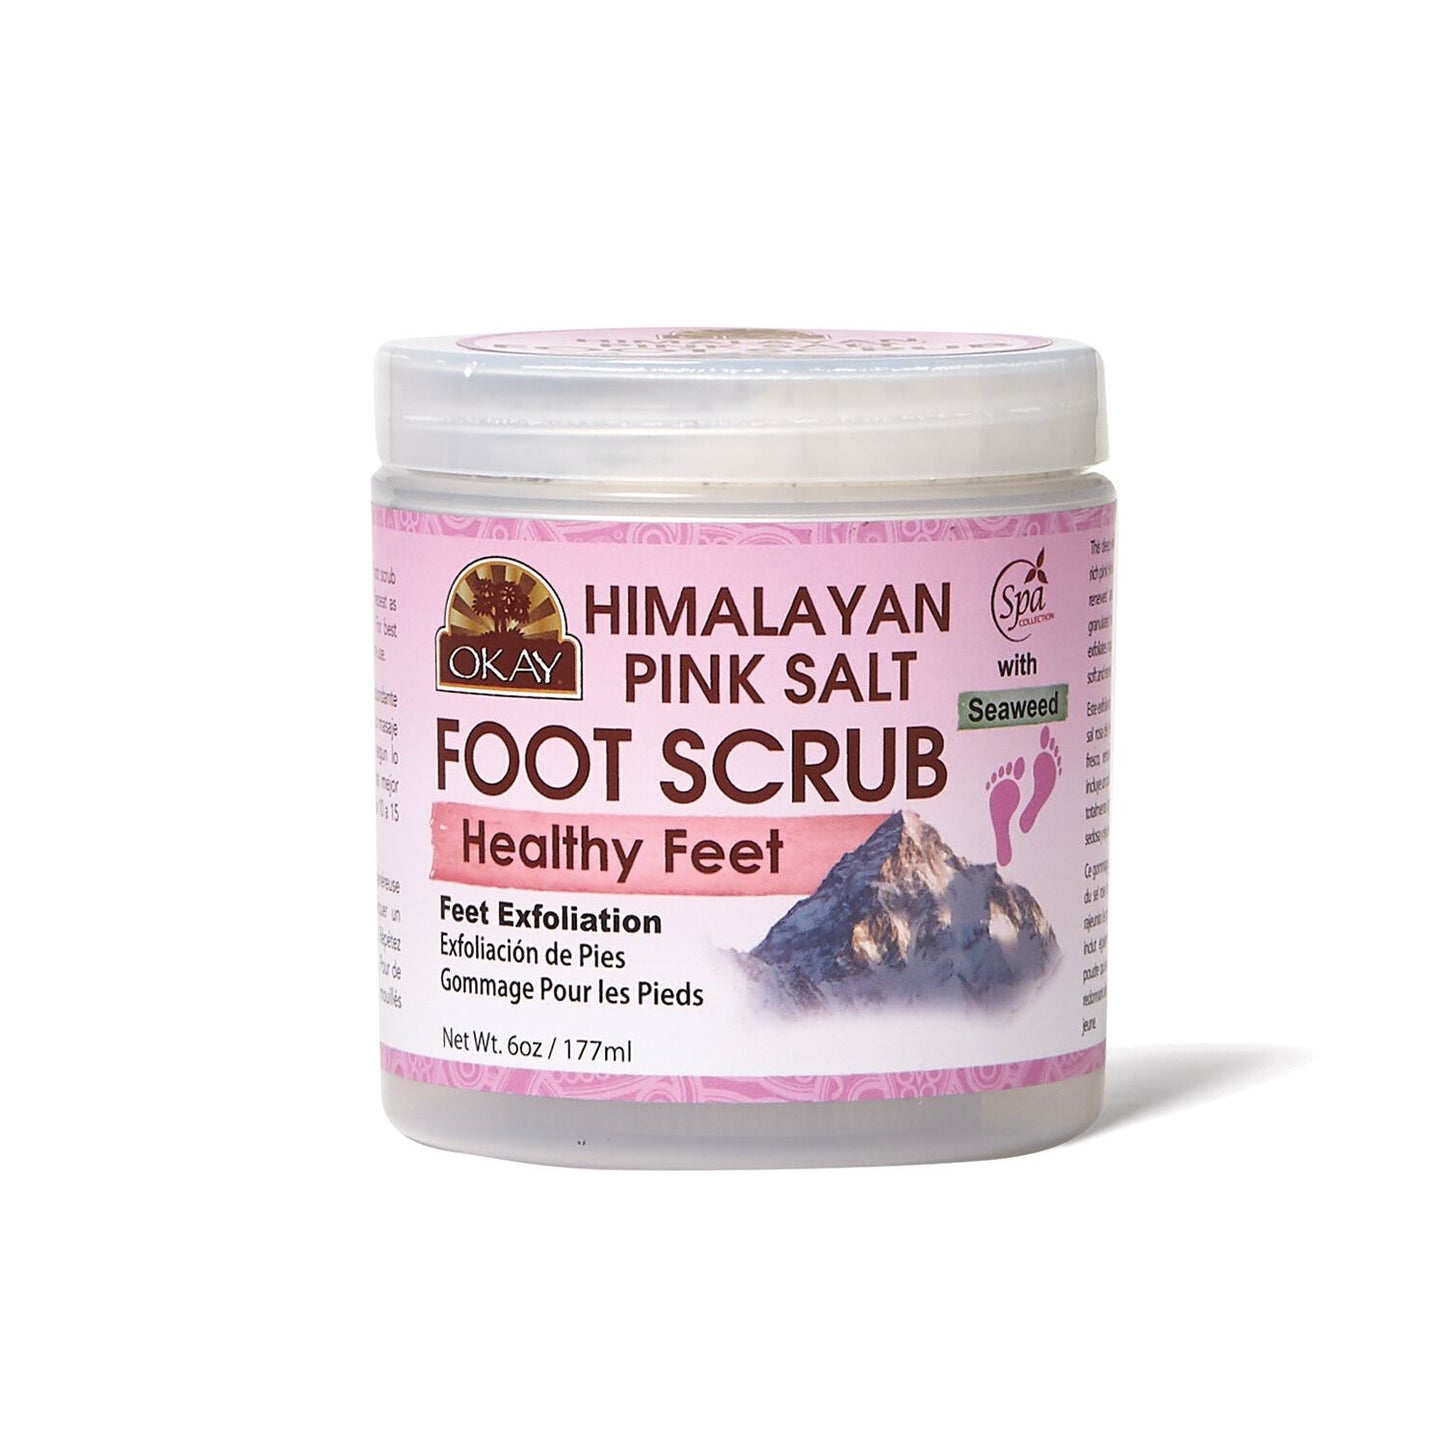 OKAY Himalayan Pink Salt Foot Scrub